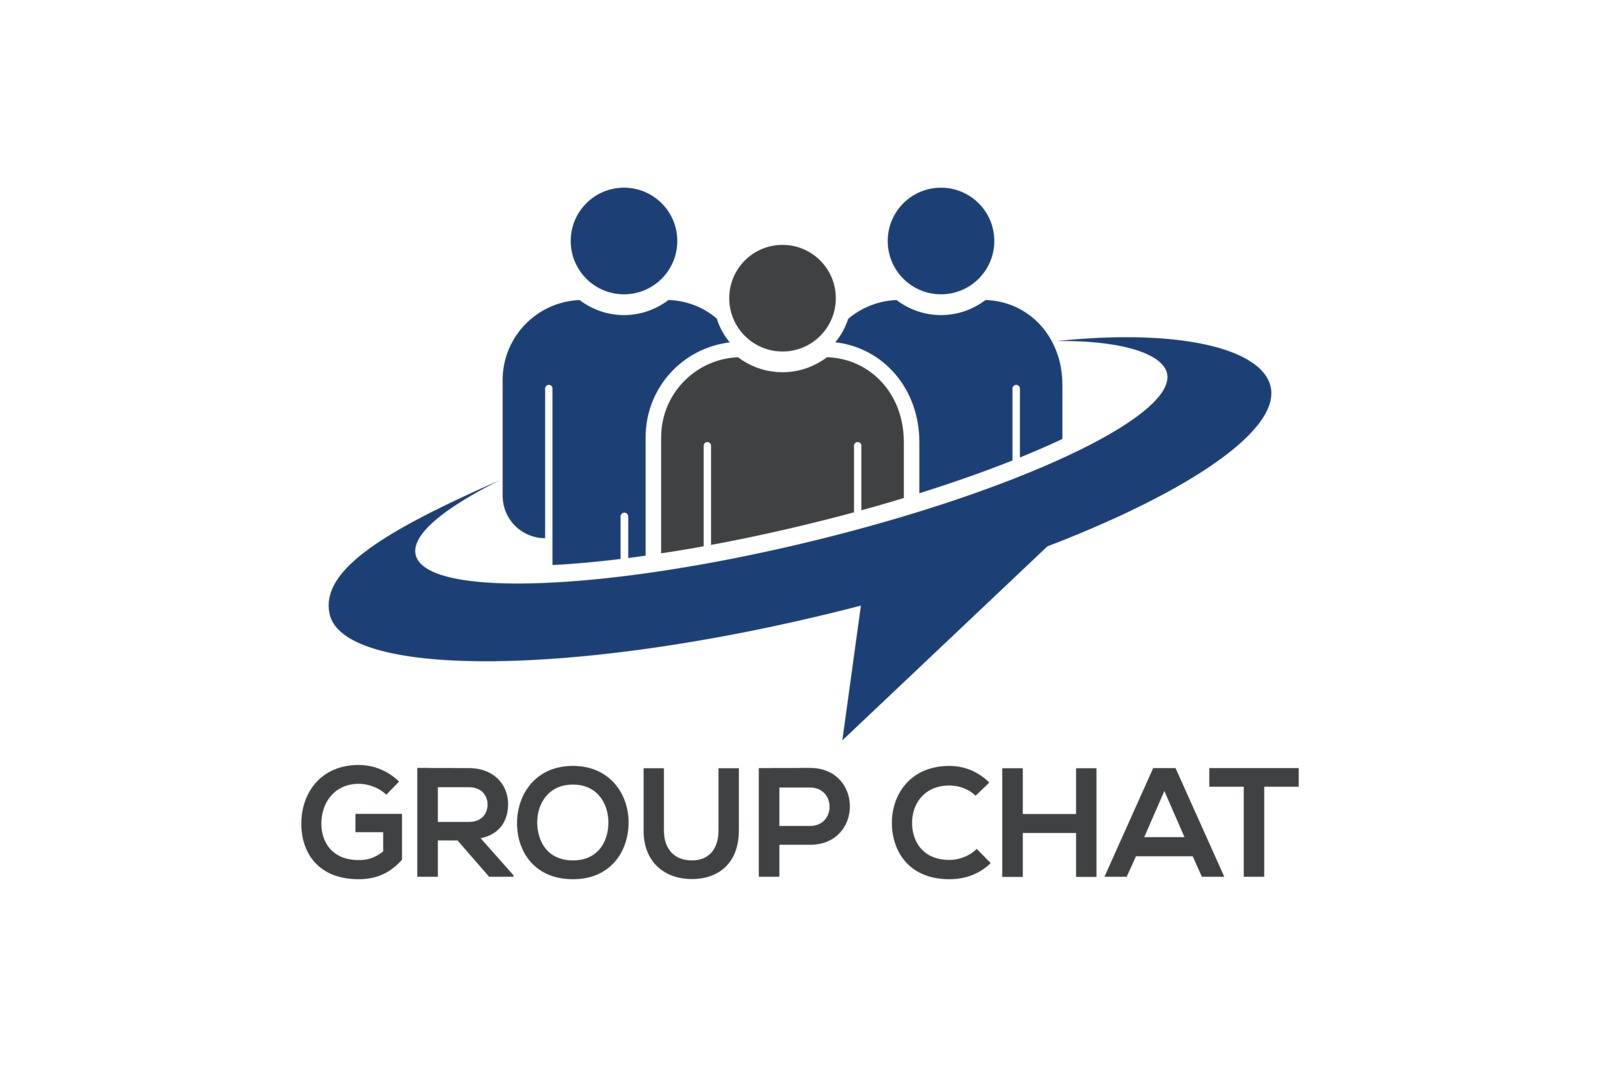 Group Chat logo symbol, People logo